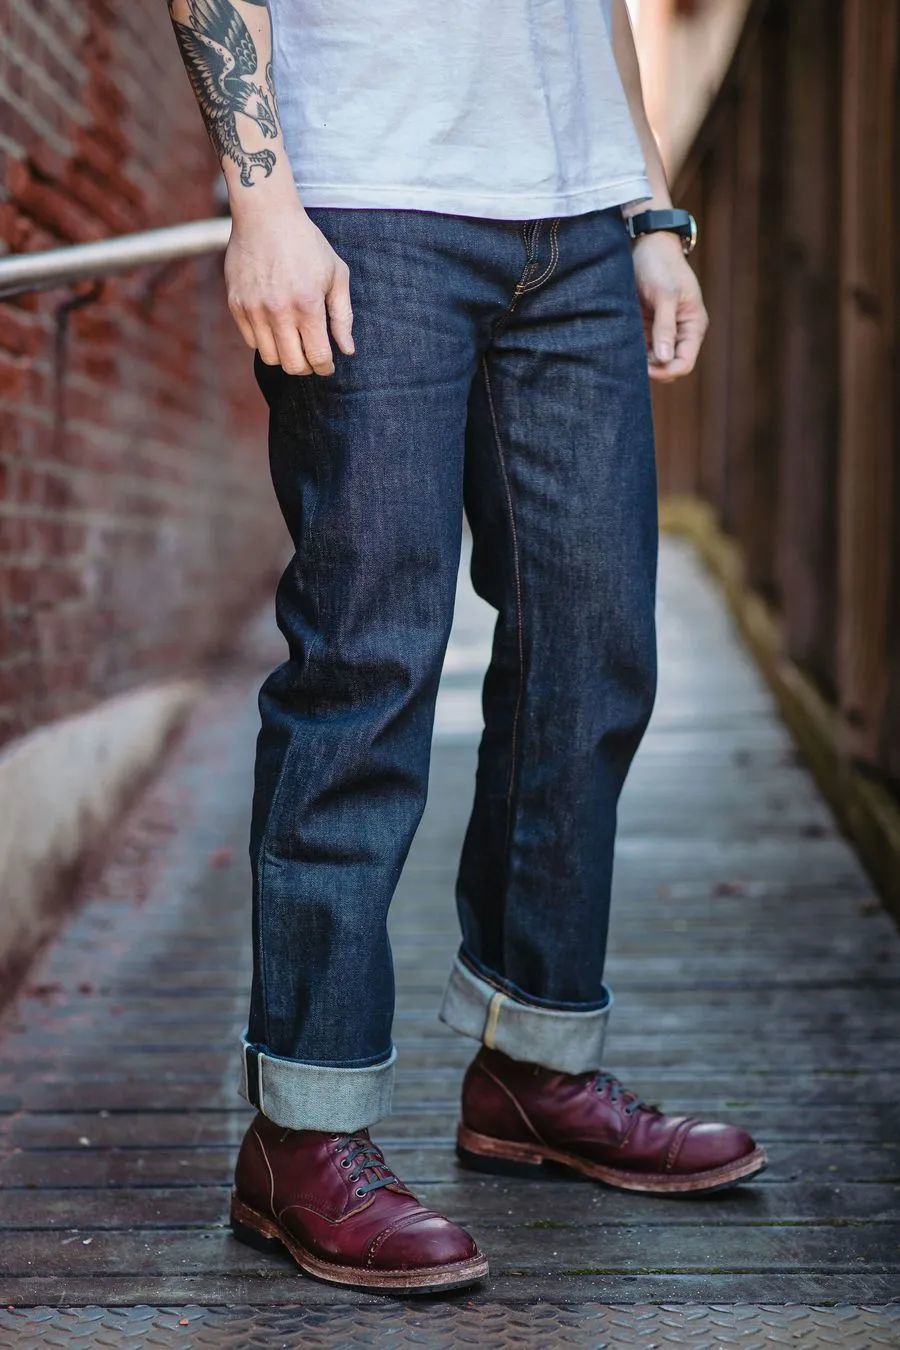 硬派原色牛仔裤代表TELLASON，谁说美式比不上日式？